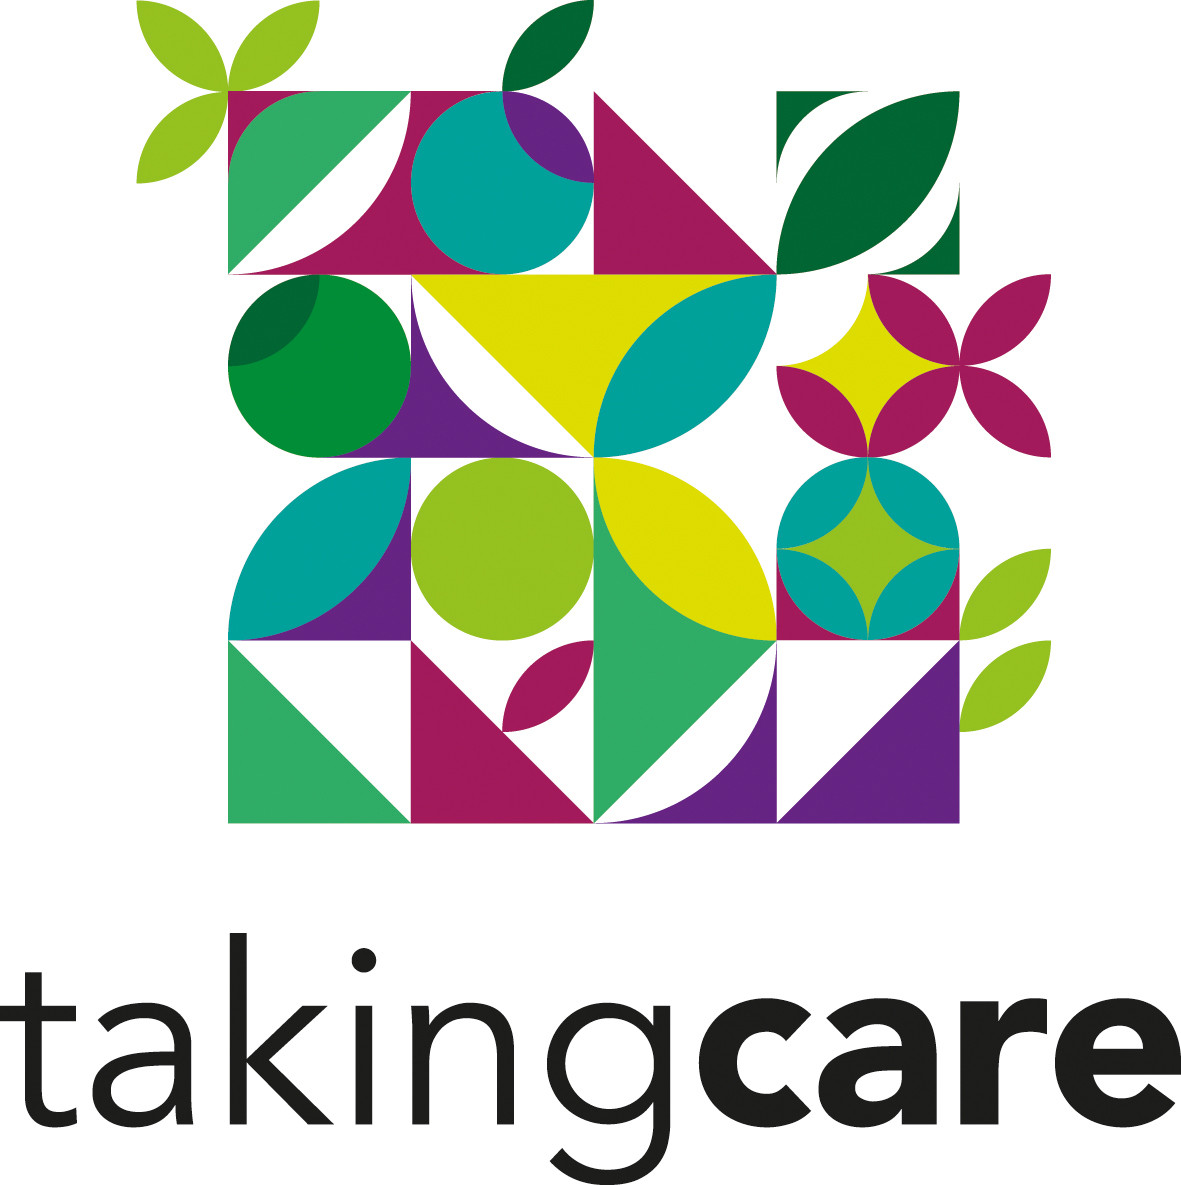 Logo Taking Care